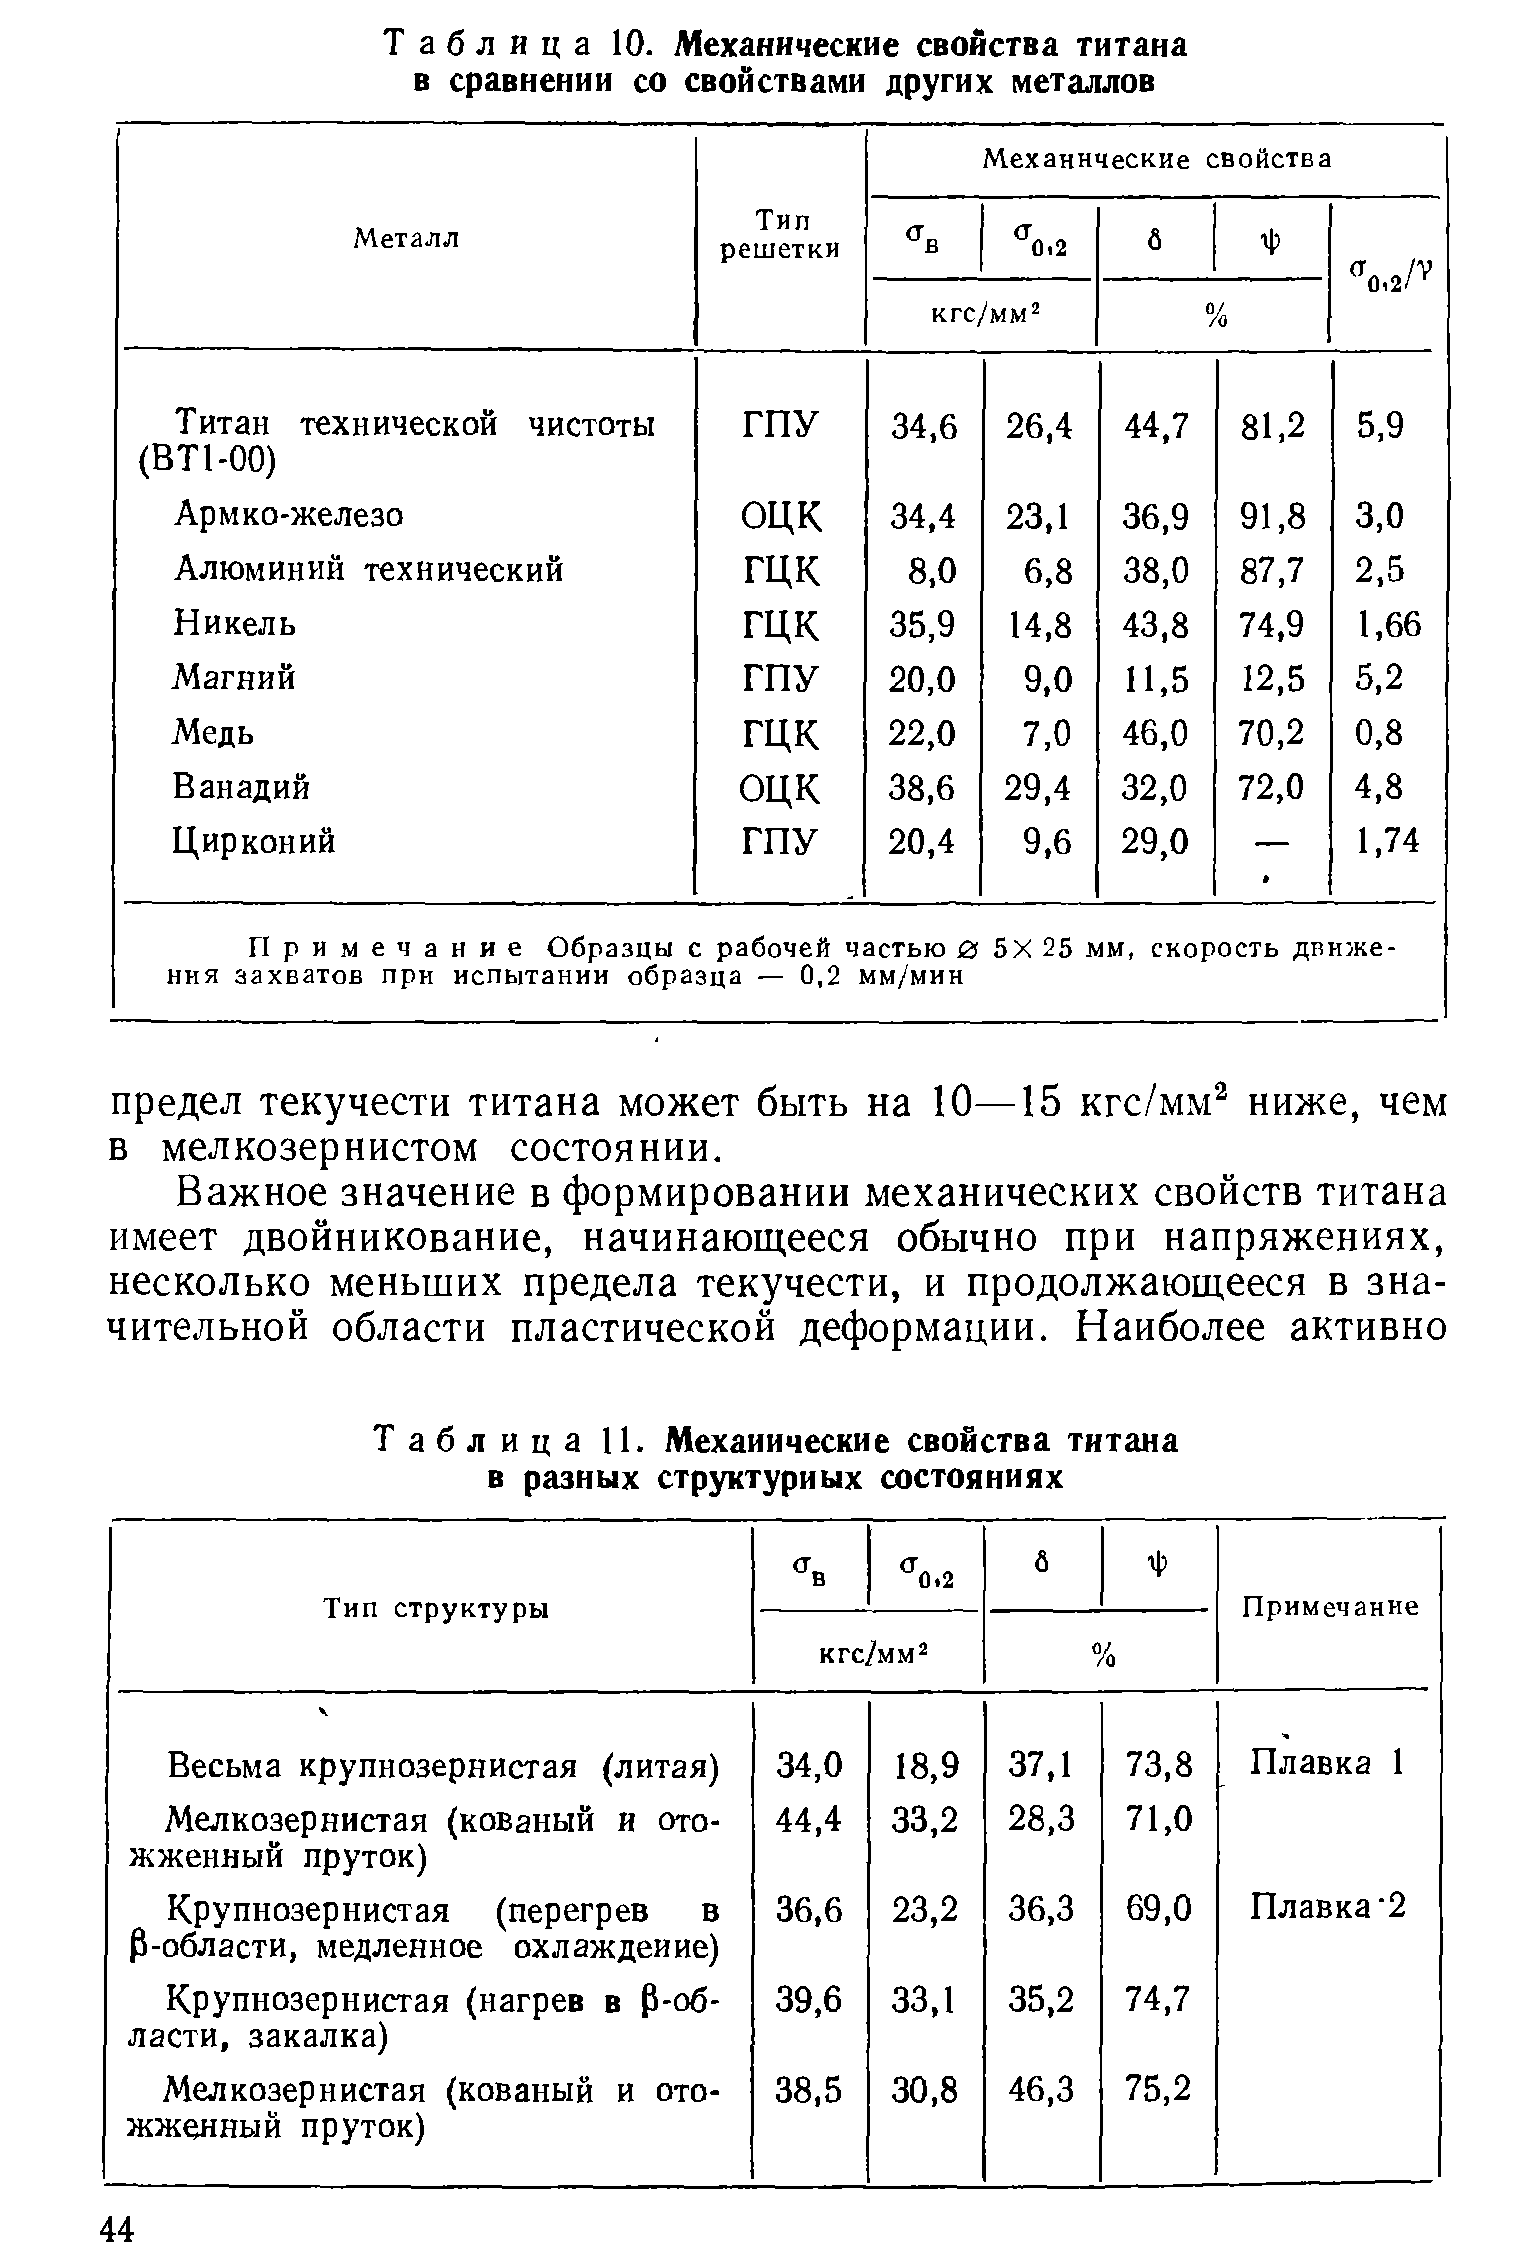 Таблица 11. Механические свойства титана в разных структурных состояниях
